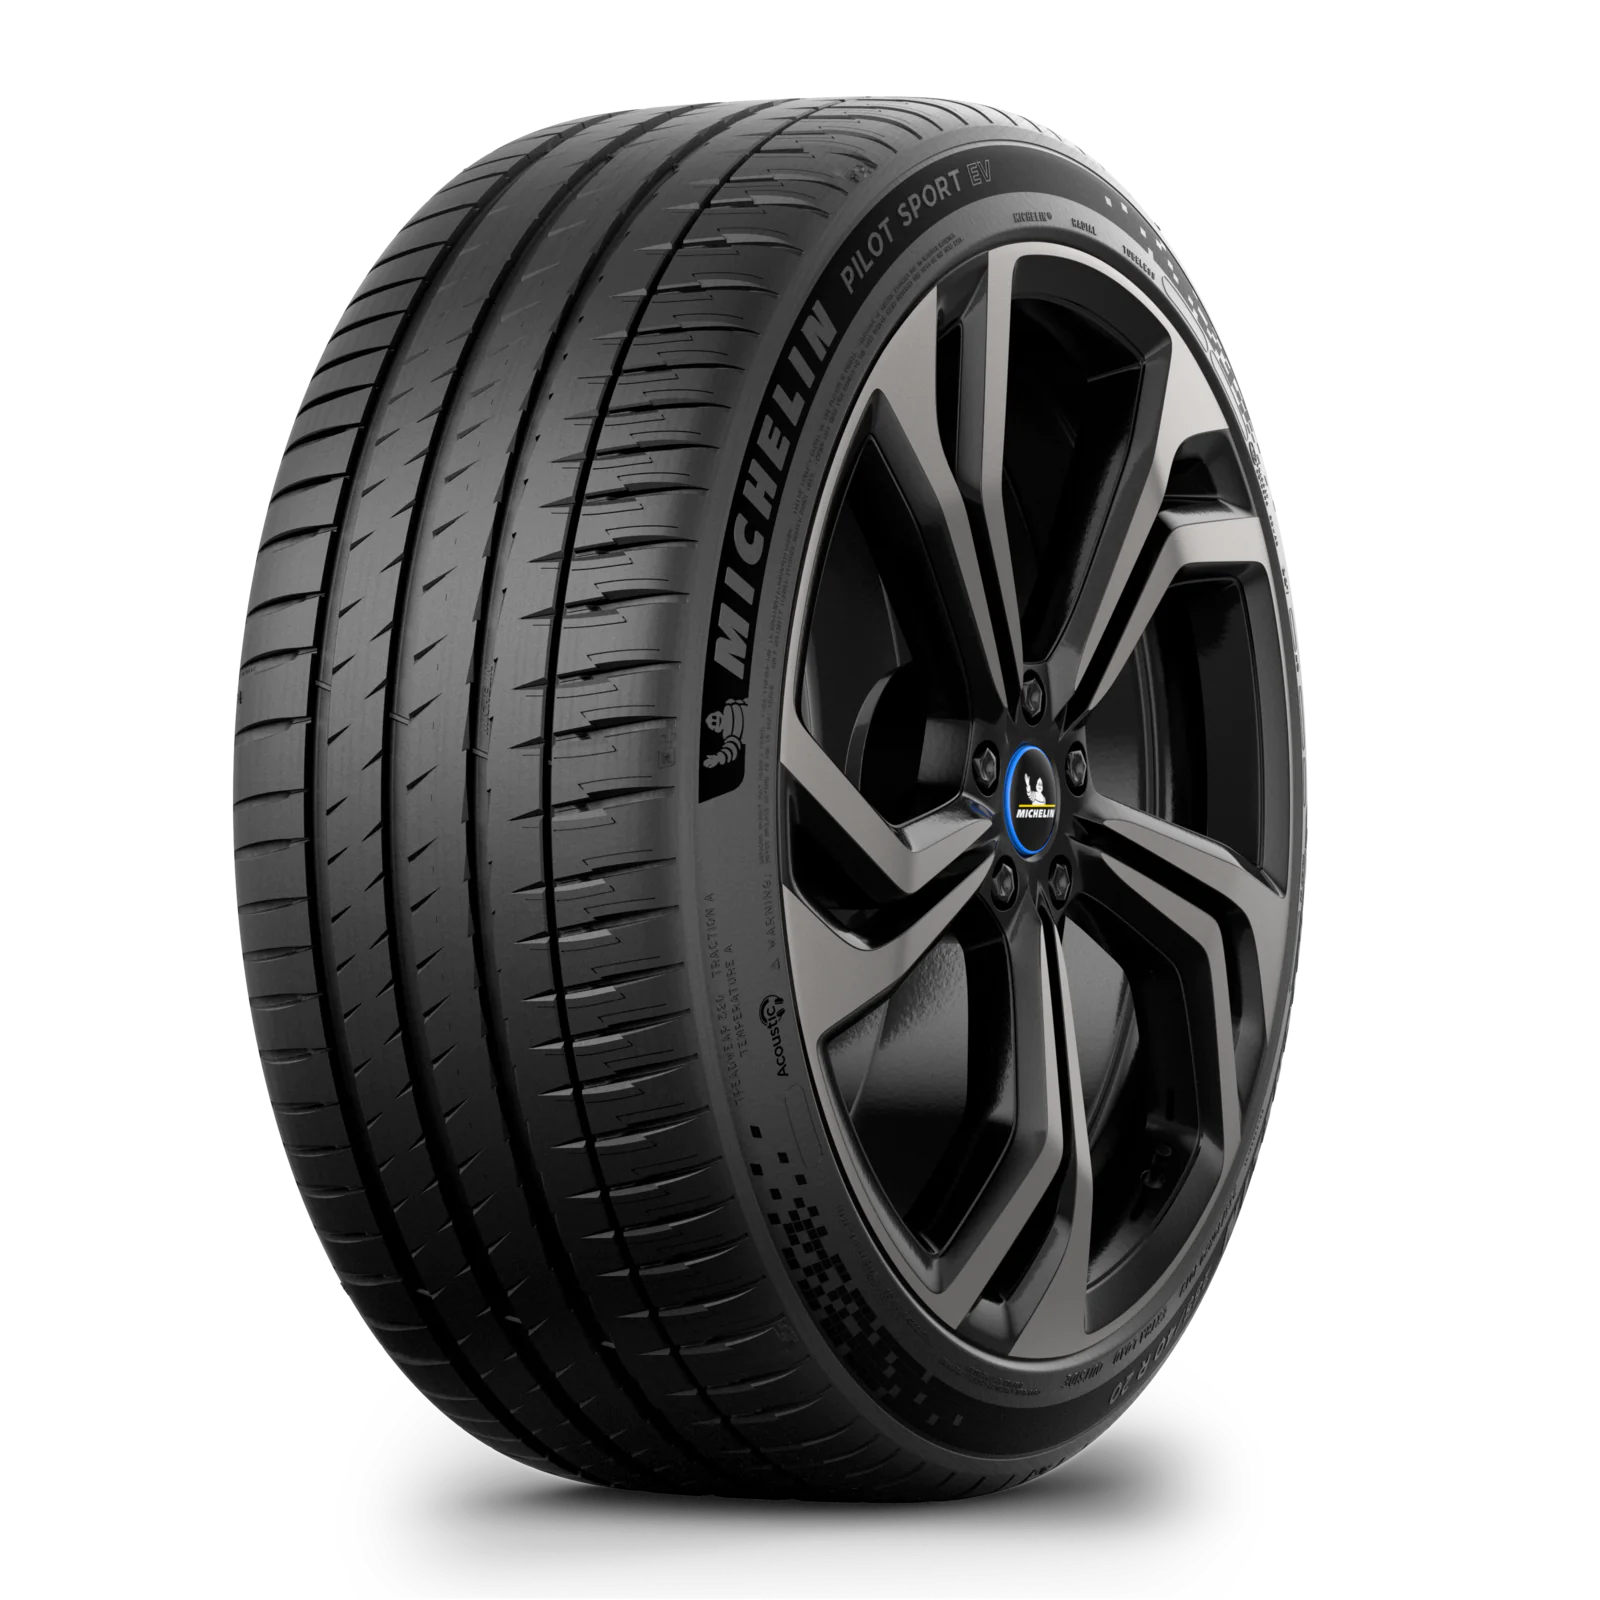 Michelin Michelin 245/40 R20 99Y PILOT SPORT EV pneumatici nuovi Estivo 